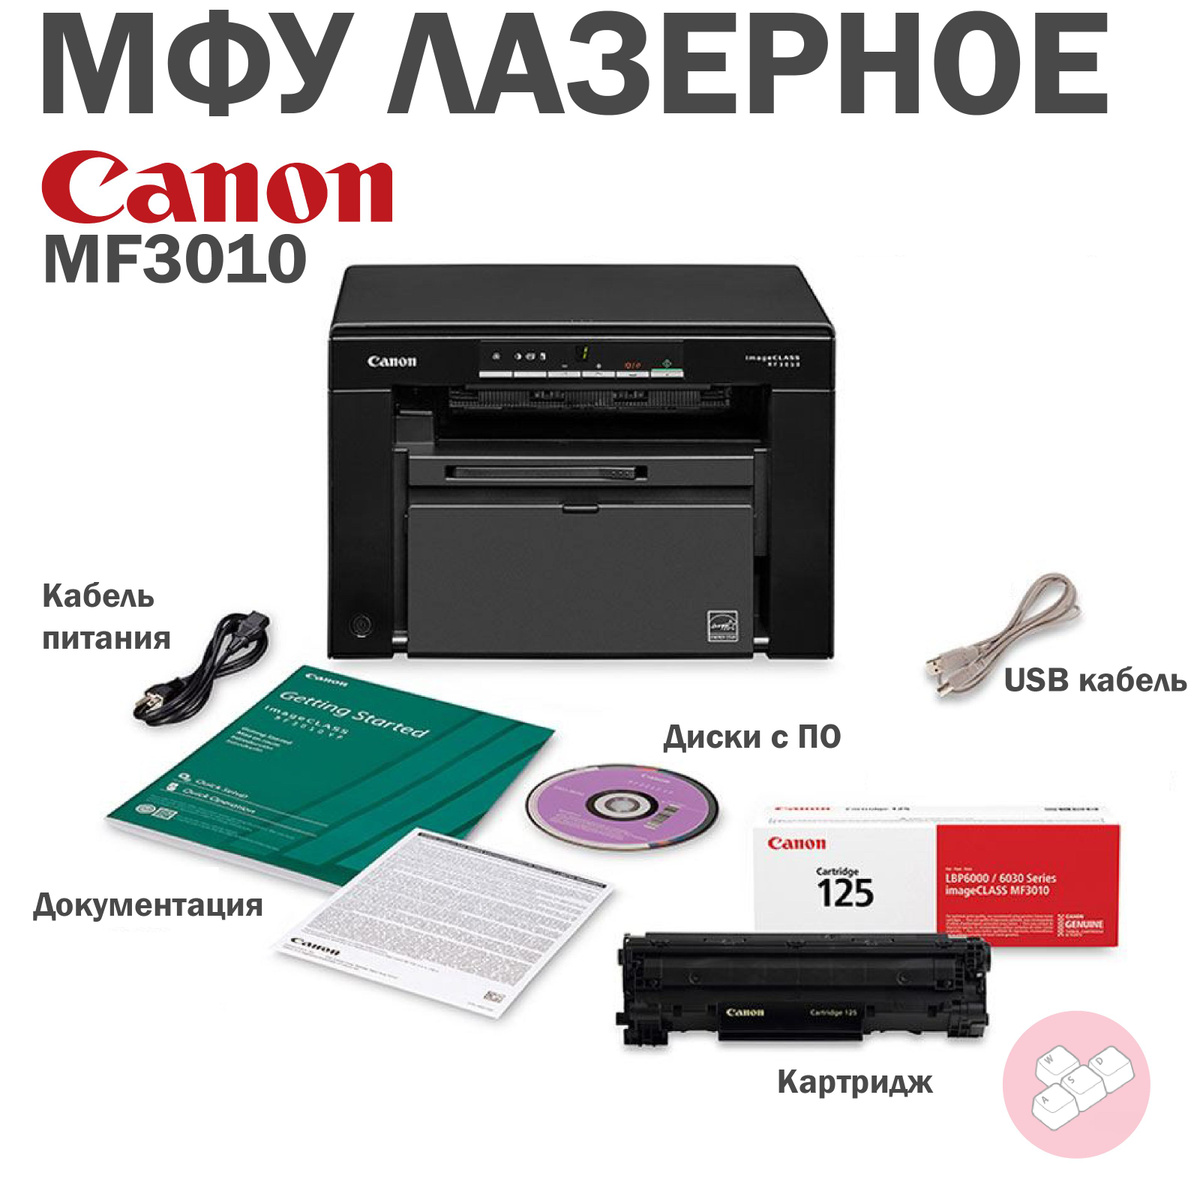 МФУ Лазерное Canon i-SENSYS MF3010